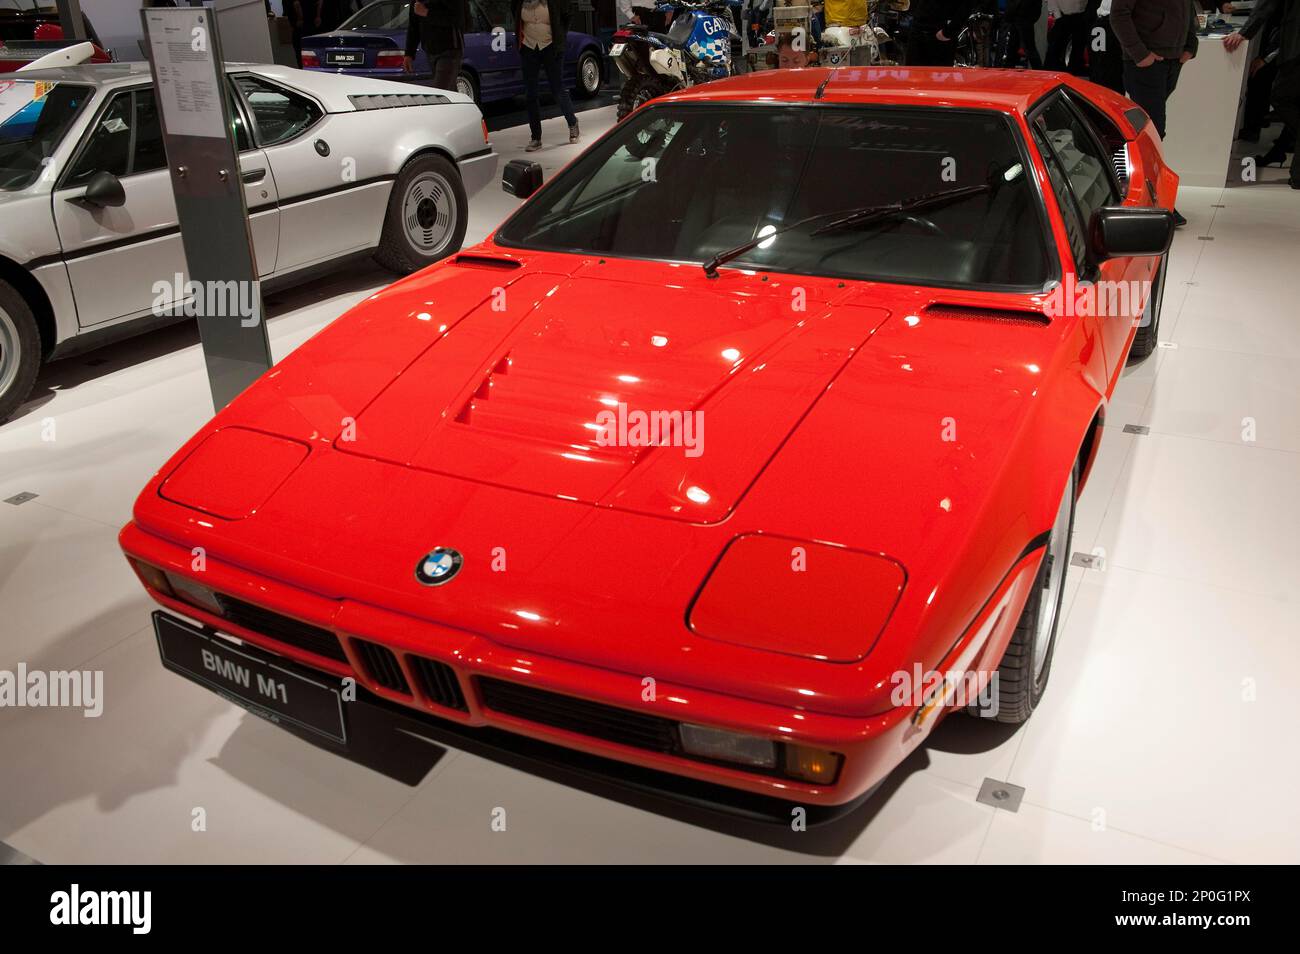 BMW M1, 1978-1981 gebaut, Supersportwagen, Sportwagen, Designer: Giorgetto Giugiaro Stockfoto